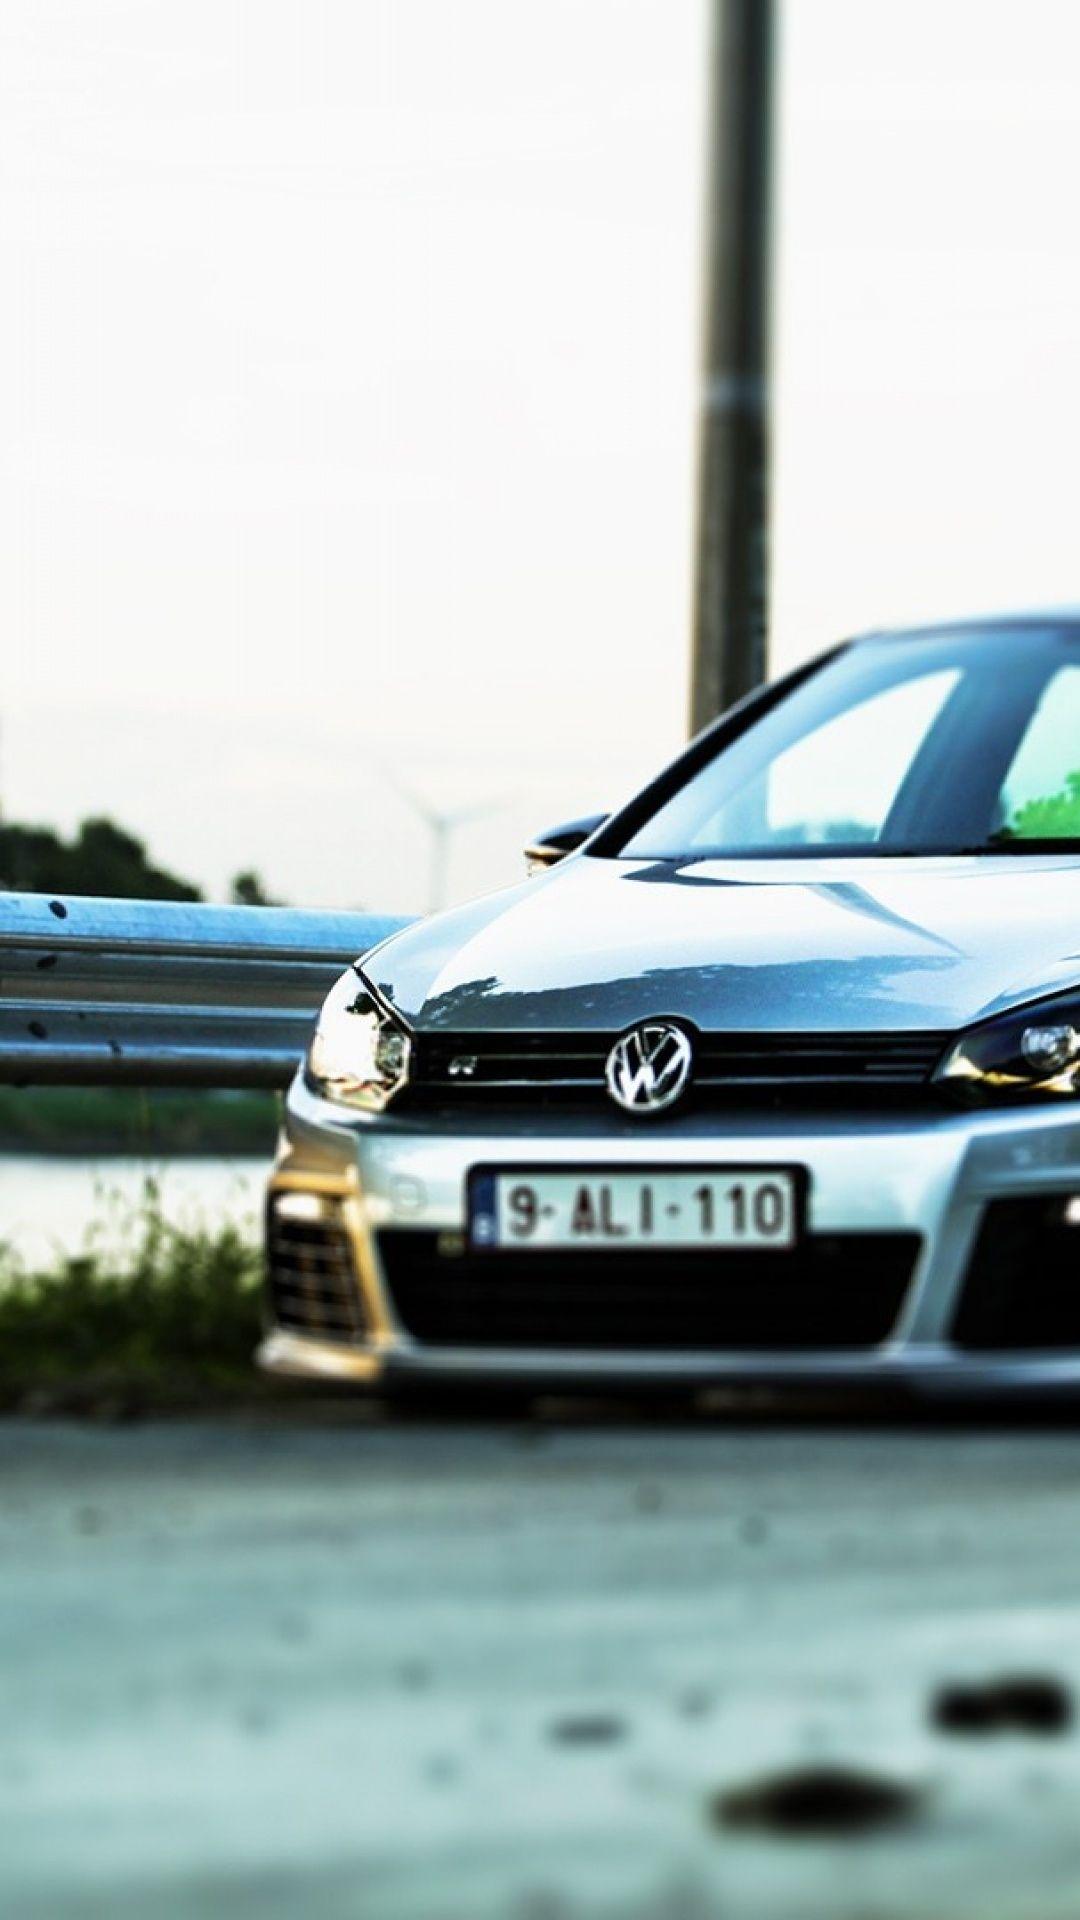 Volkswagen Golf iPhone 5 Wallpaper Best Volkswagen Golf